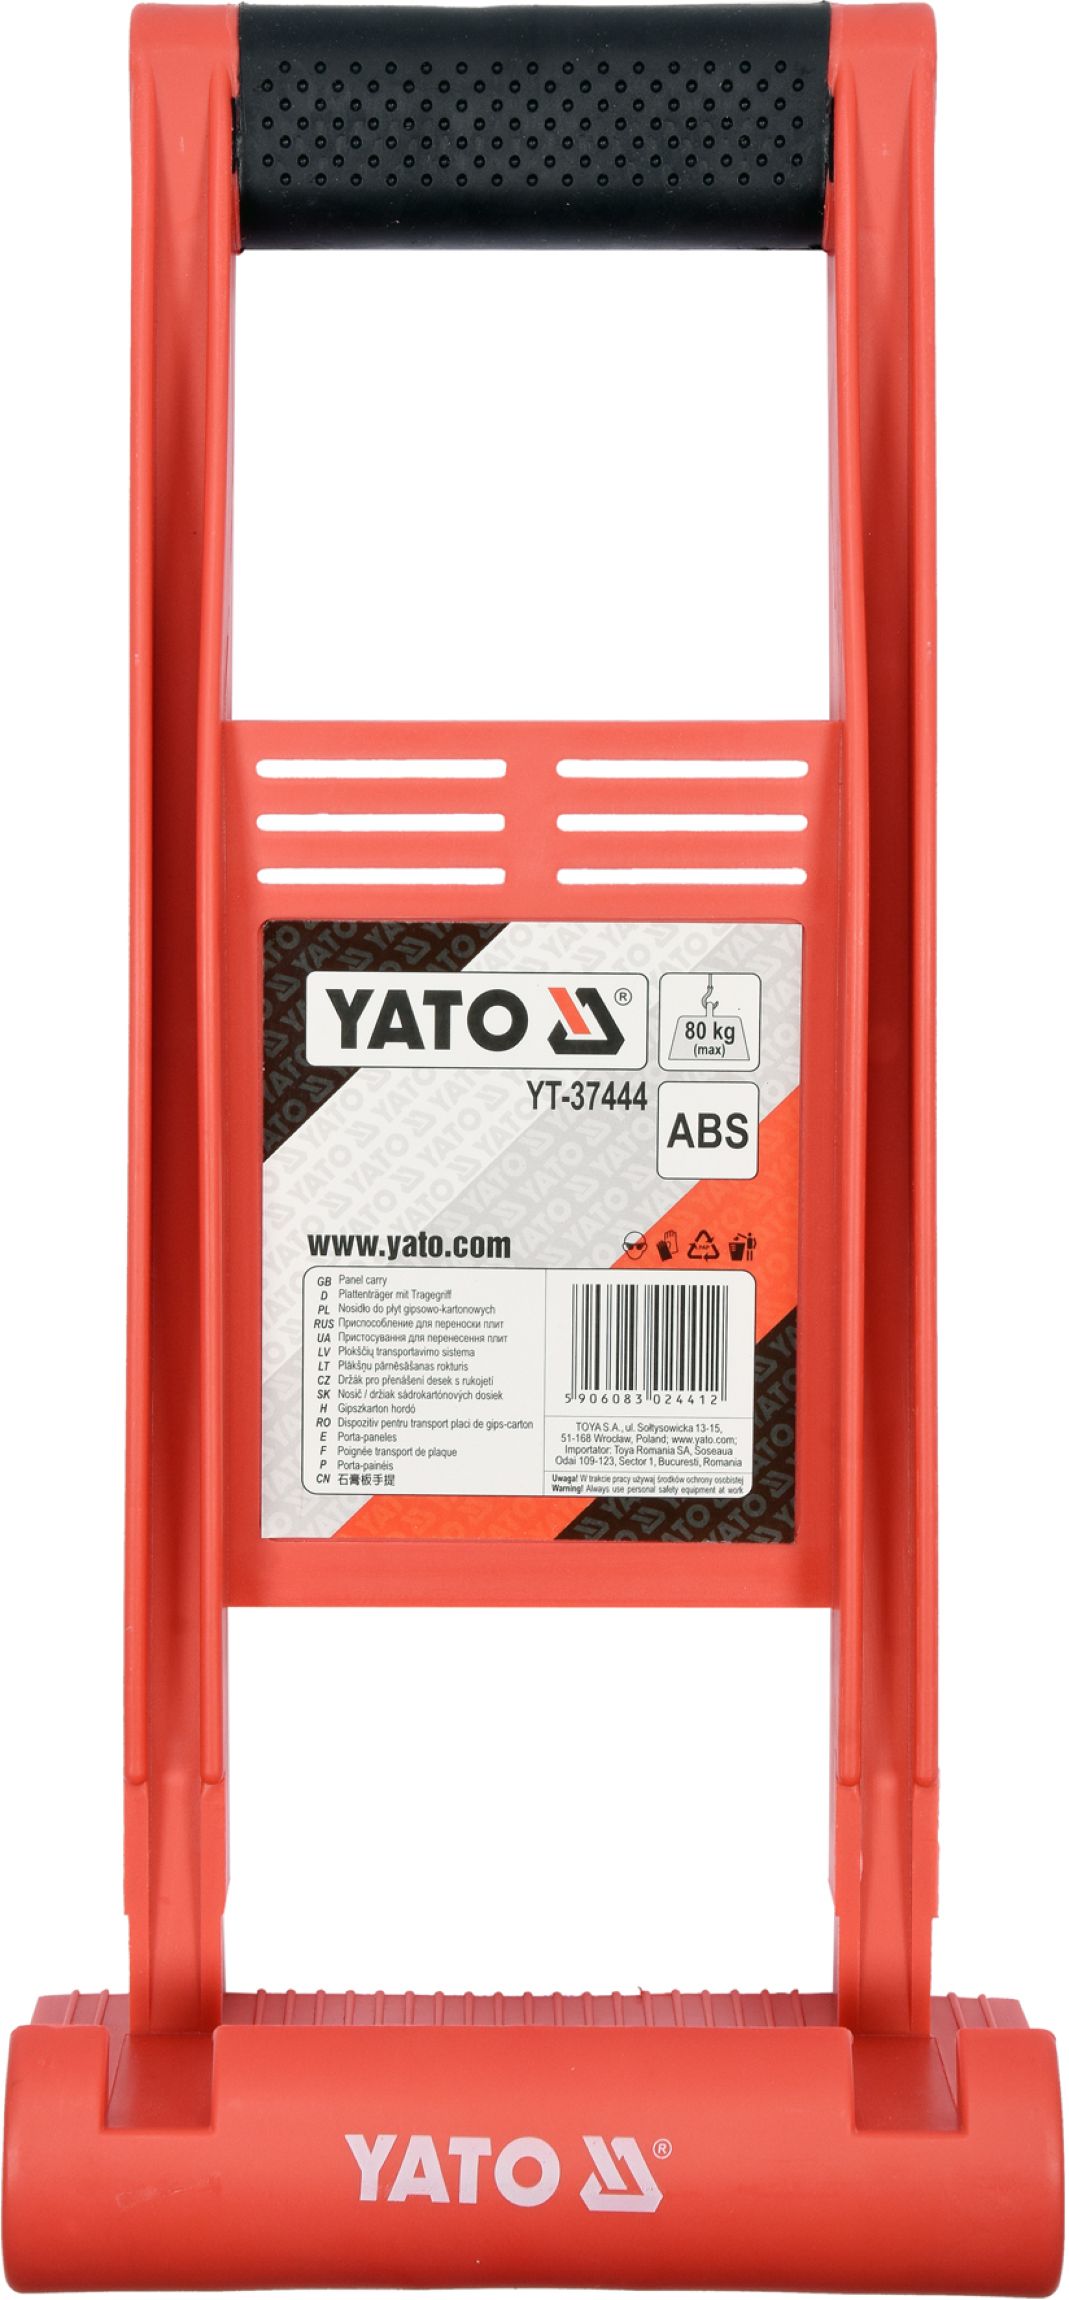 Držák pro přenášení desek ABS (80 kg) Yato YT-37444